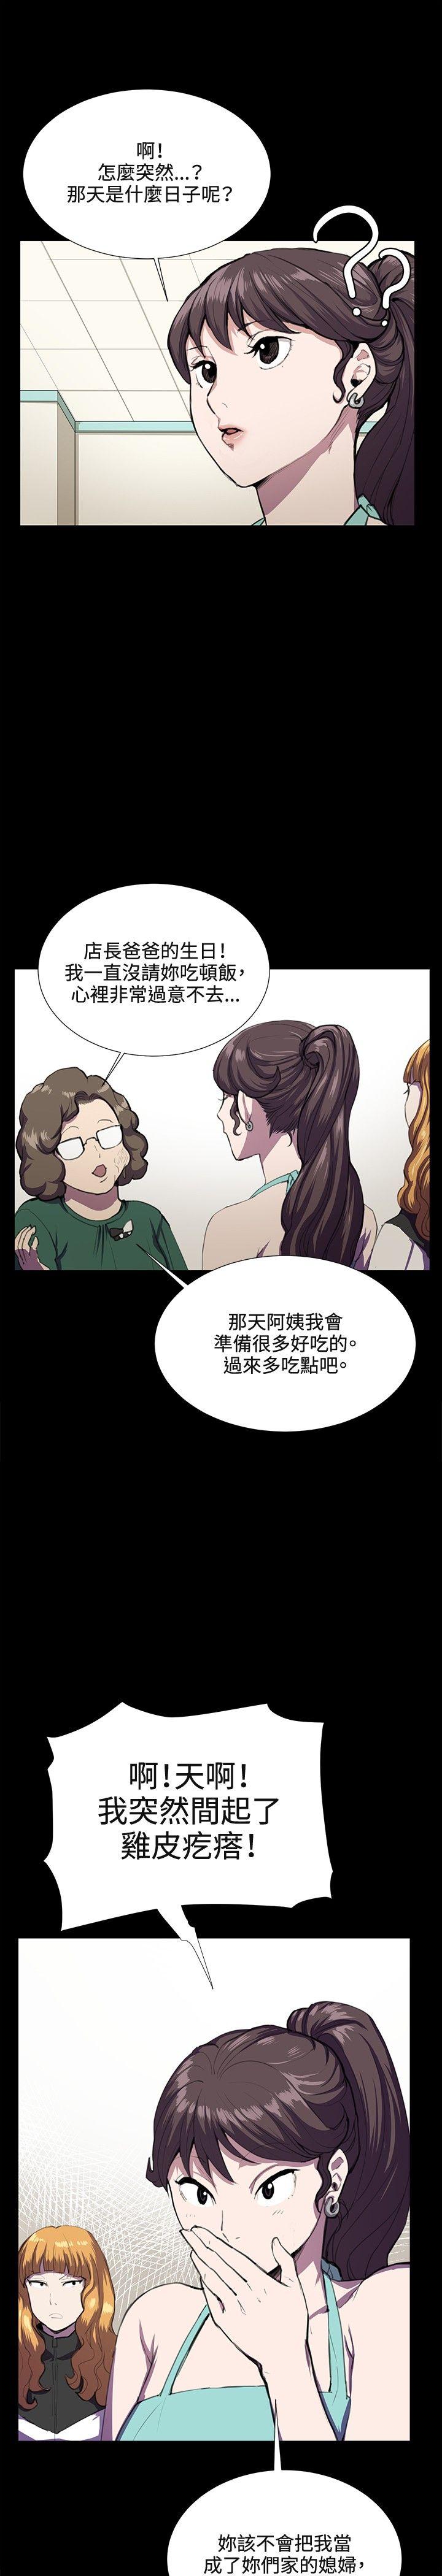 韩国污漫画 深夜便利店 第31话 13